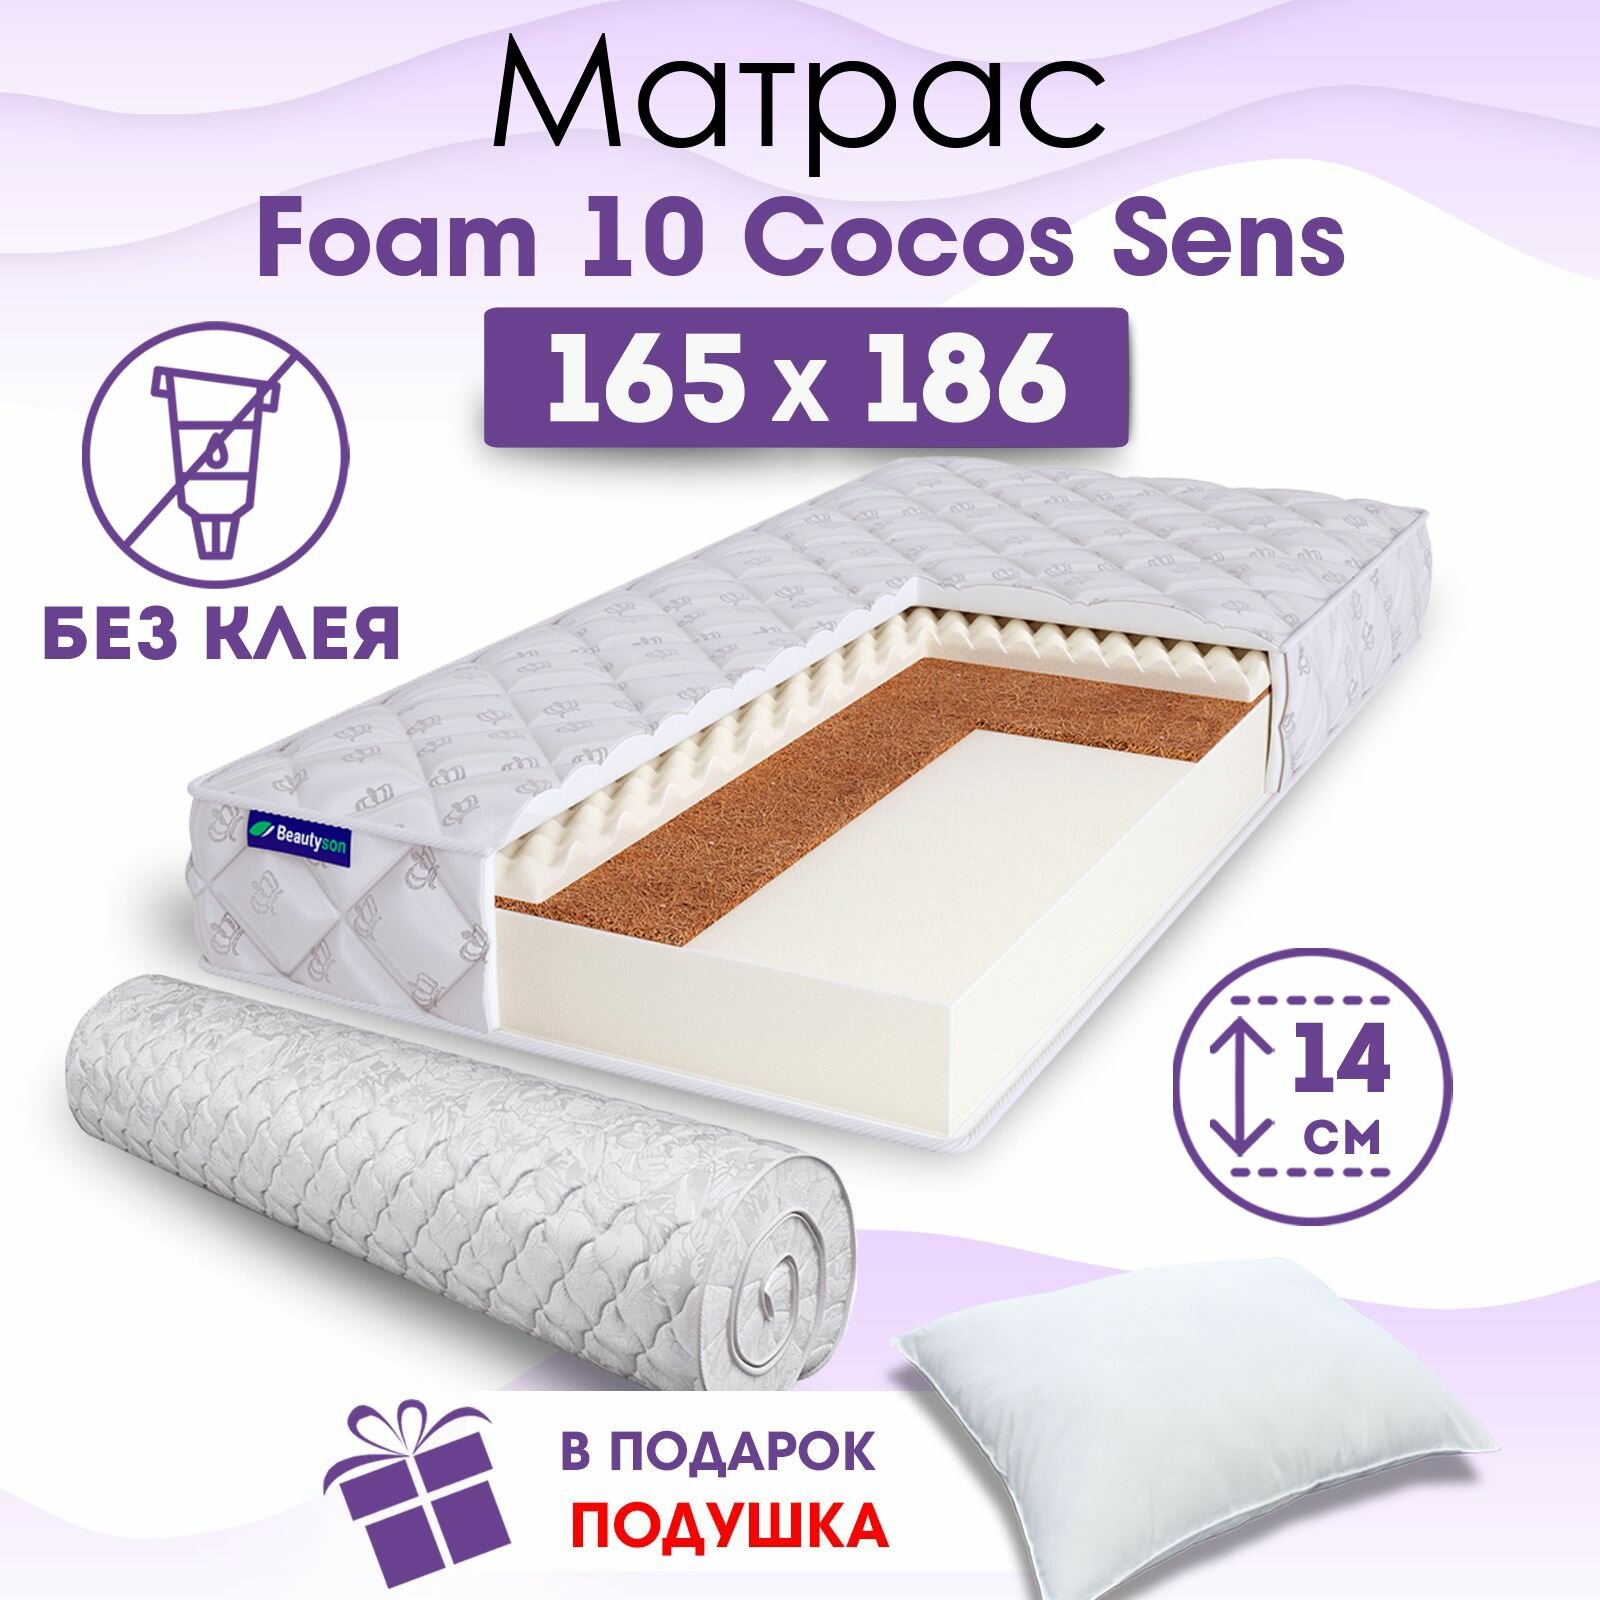 Ортопедический матрас Beautyson Foam 10 Cocos Sens без клея, 165х186, 14 см, беспружинный, двухспальный, на кровать, для дивана, умеренно мягкий